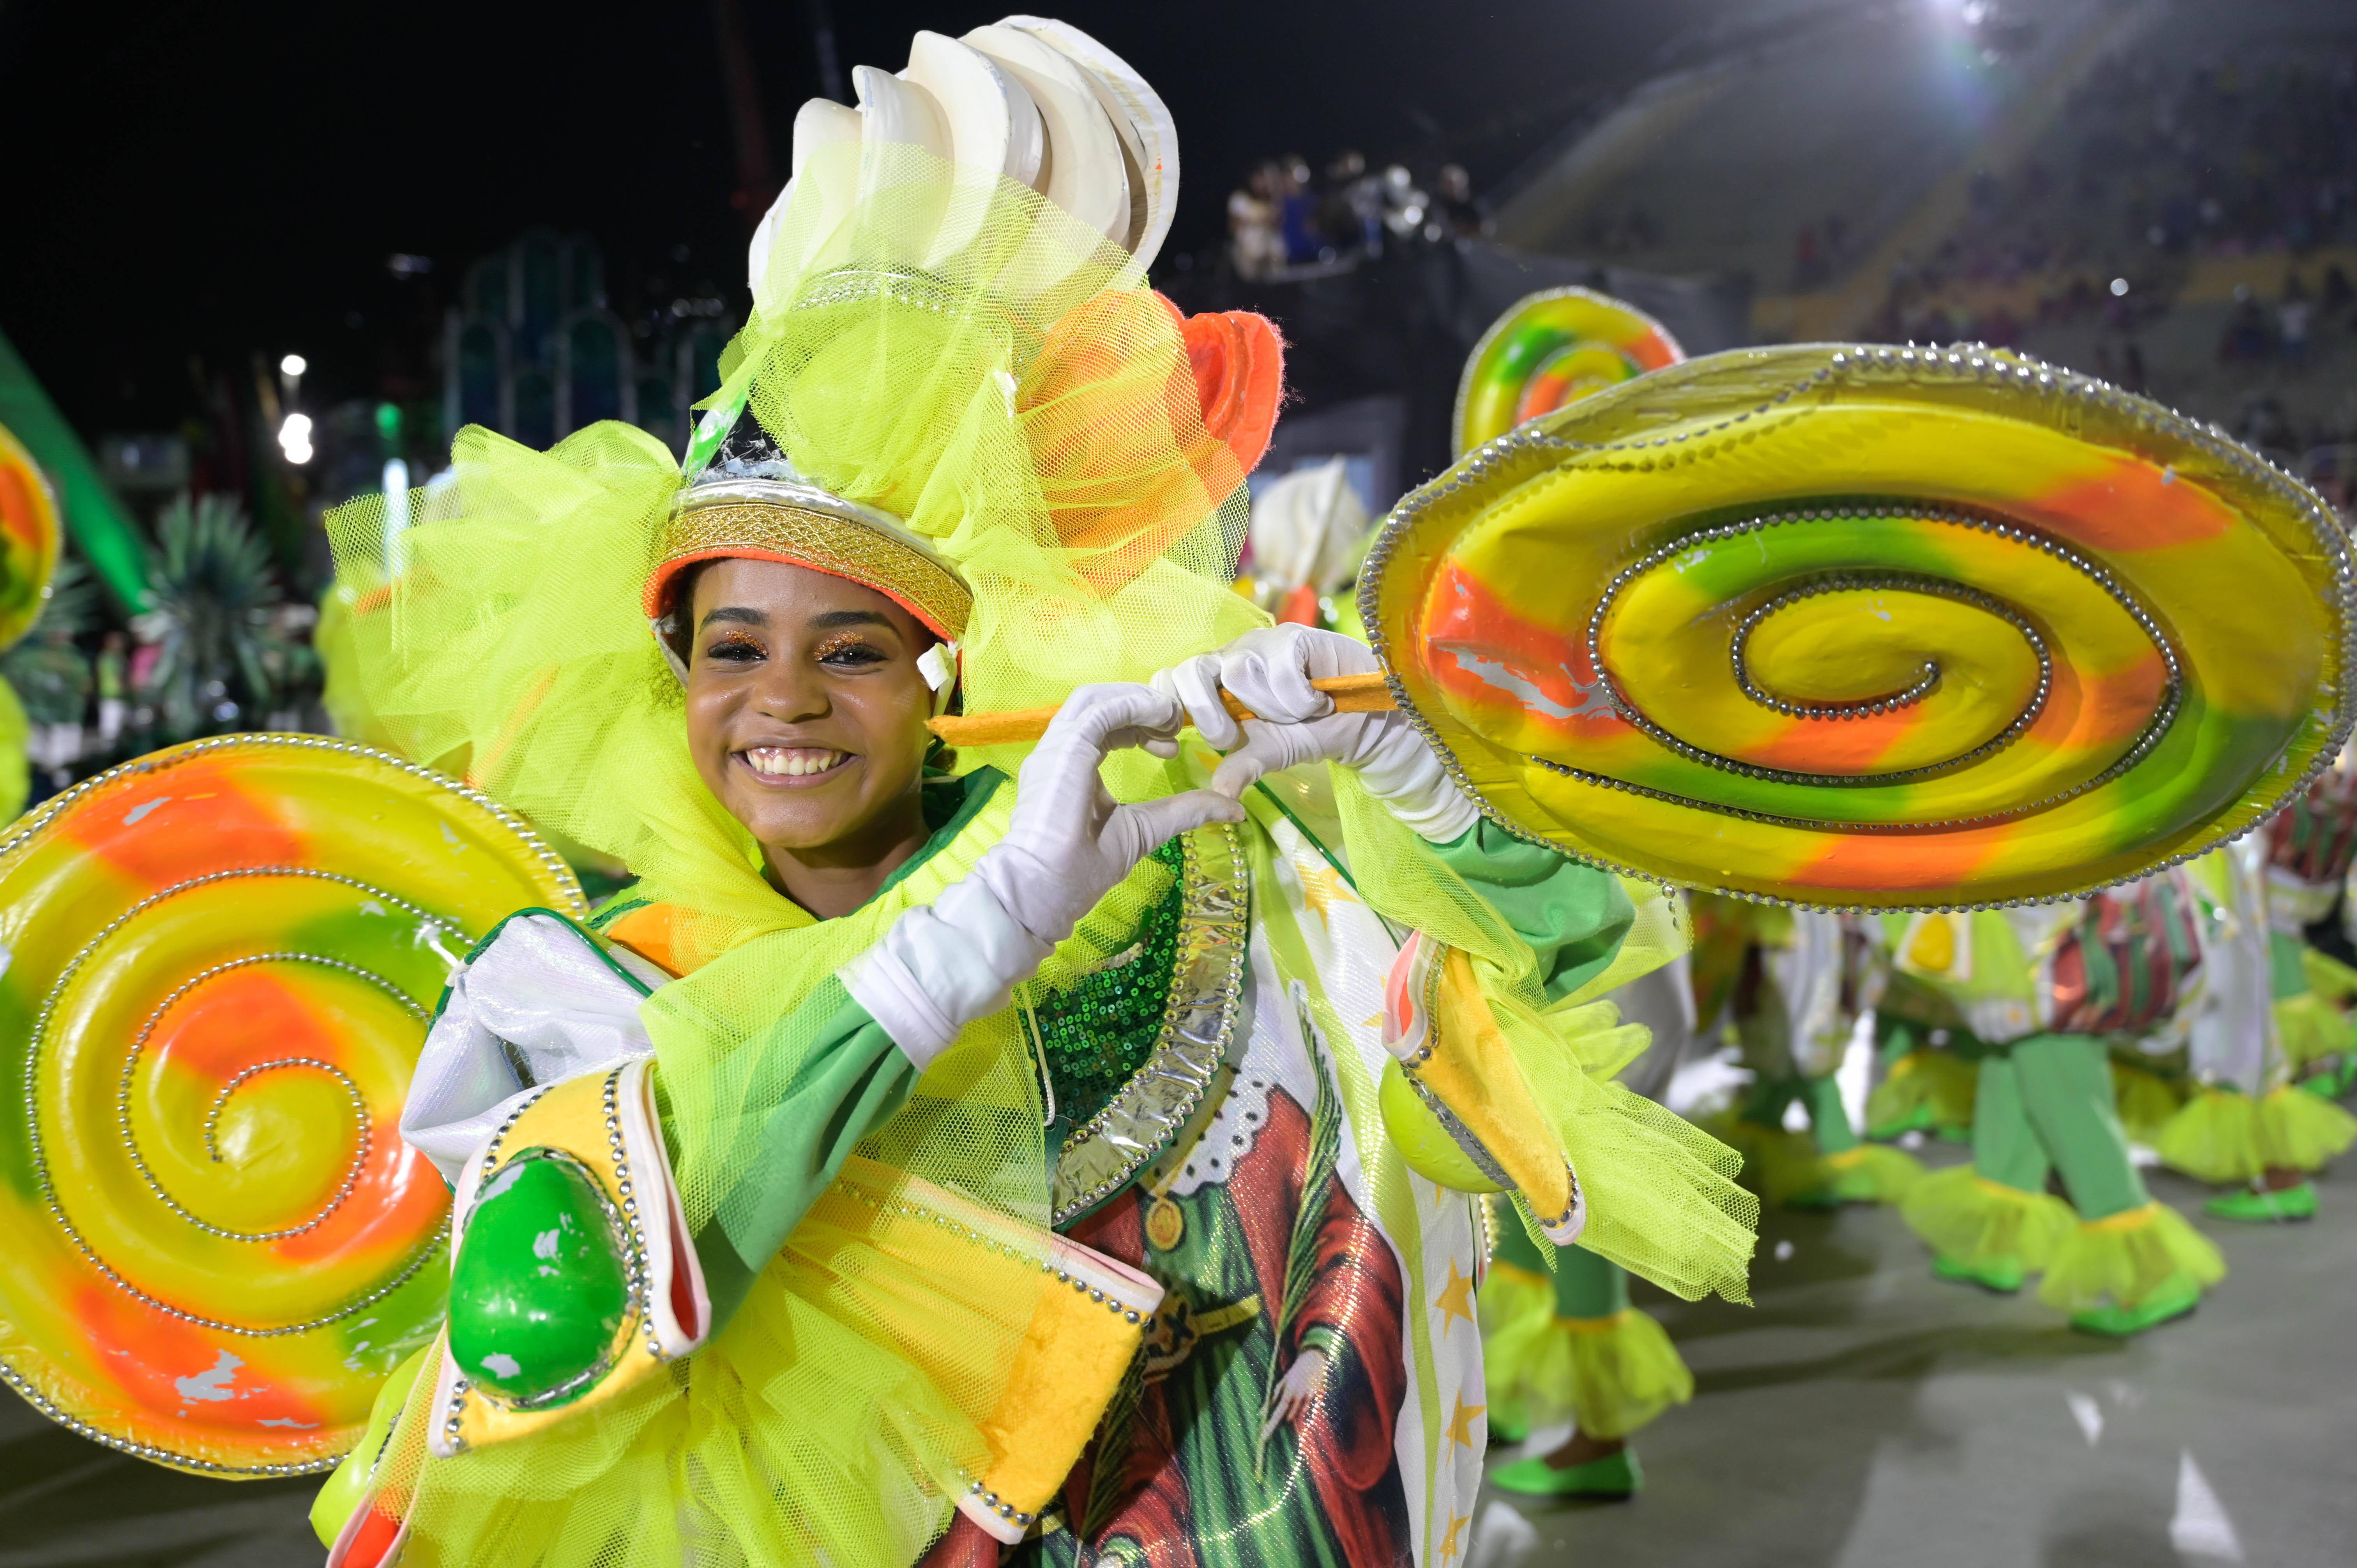 2月19日晚,在巴西里约热内卢的桑巴大道,一辆桑巴舞校花车参加狂欢节